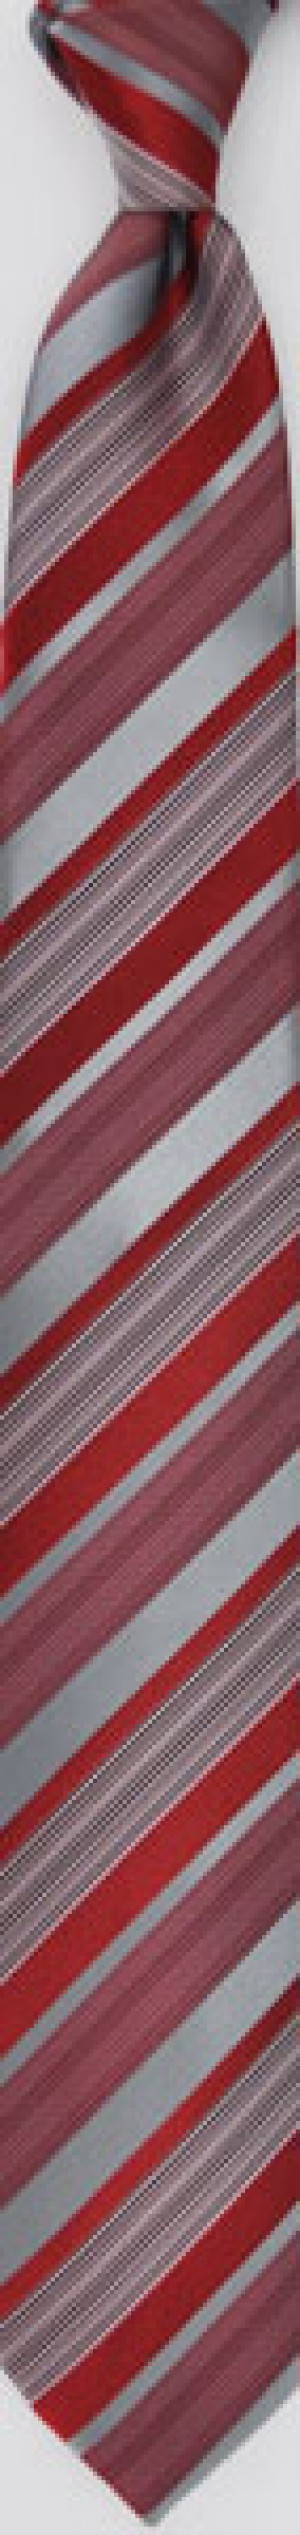 TIE - Red Stripe